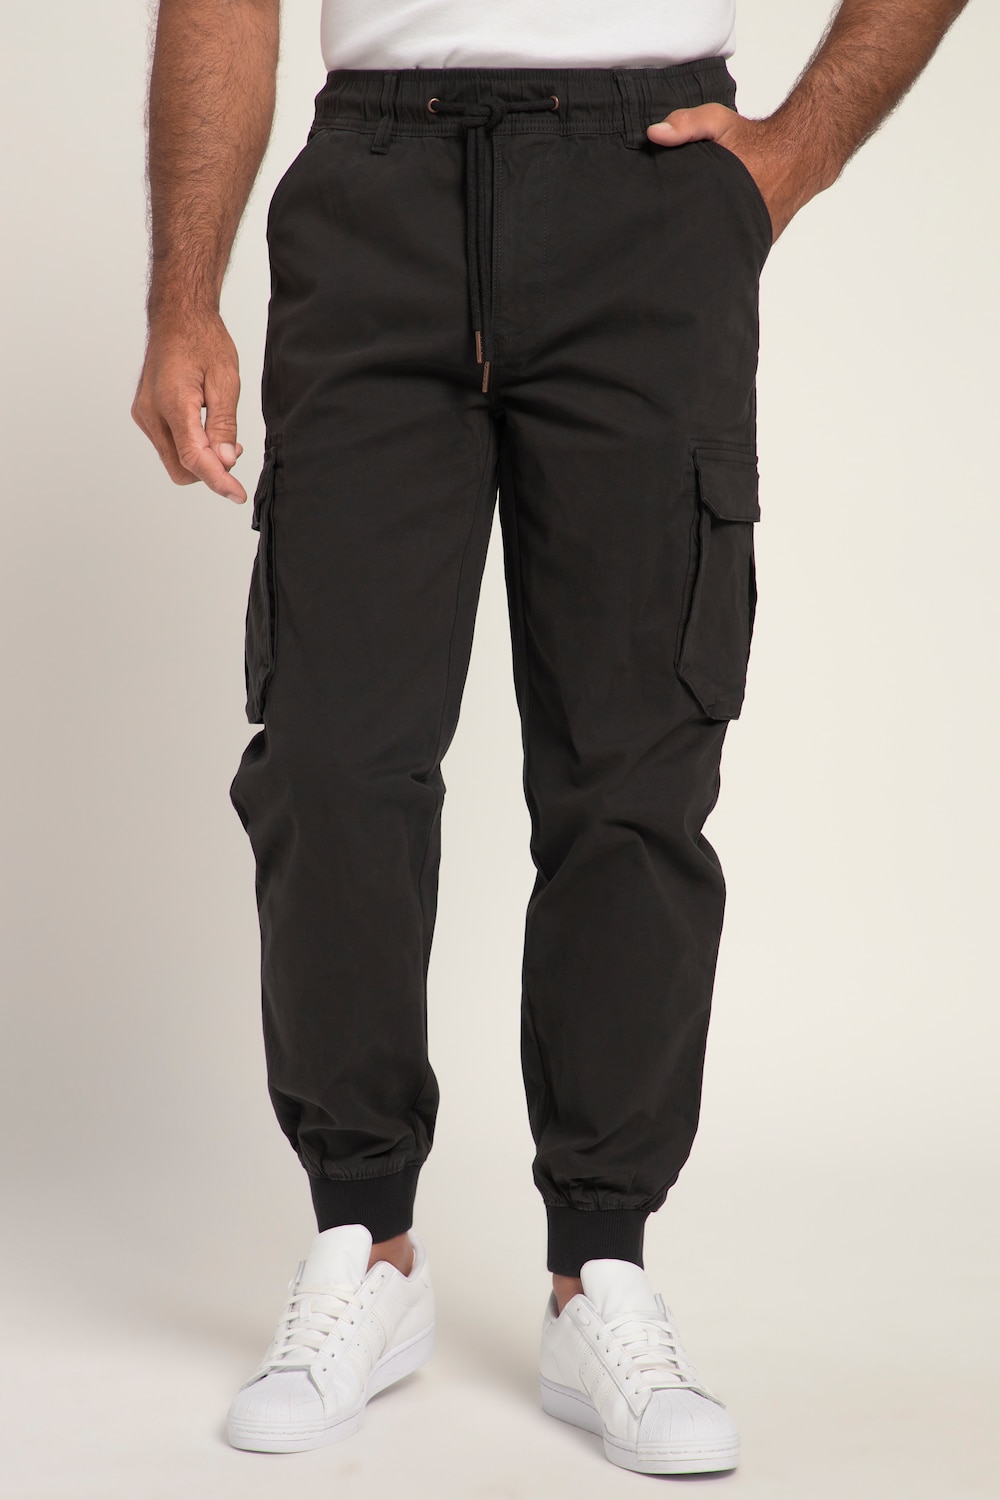 grandes tailles pantalon cargo avec technologie flexnamic®. multiples poches. coupe modern fit., hommes, noir, taille: 8xl, coton, jp1880